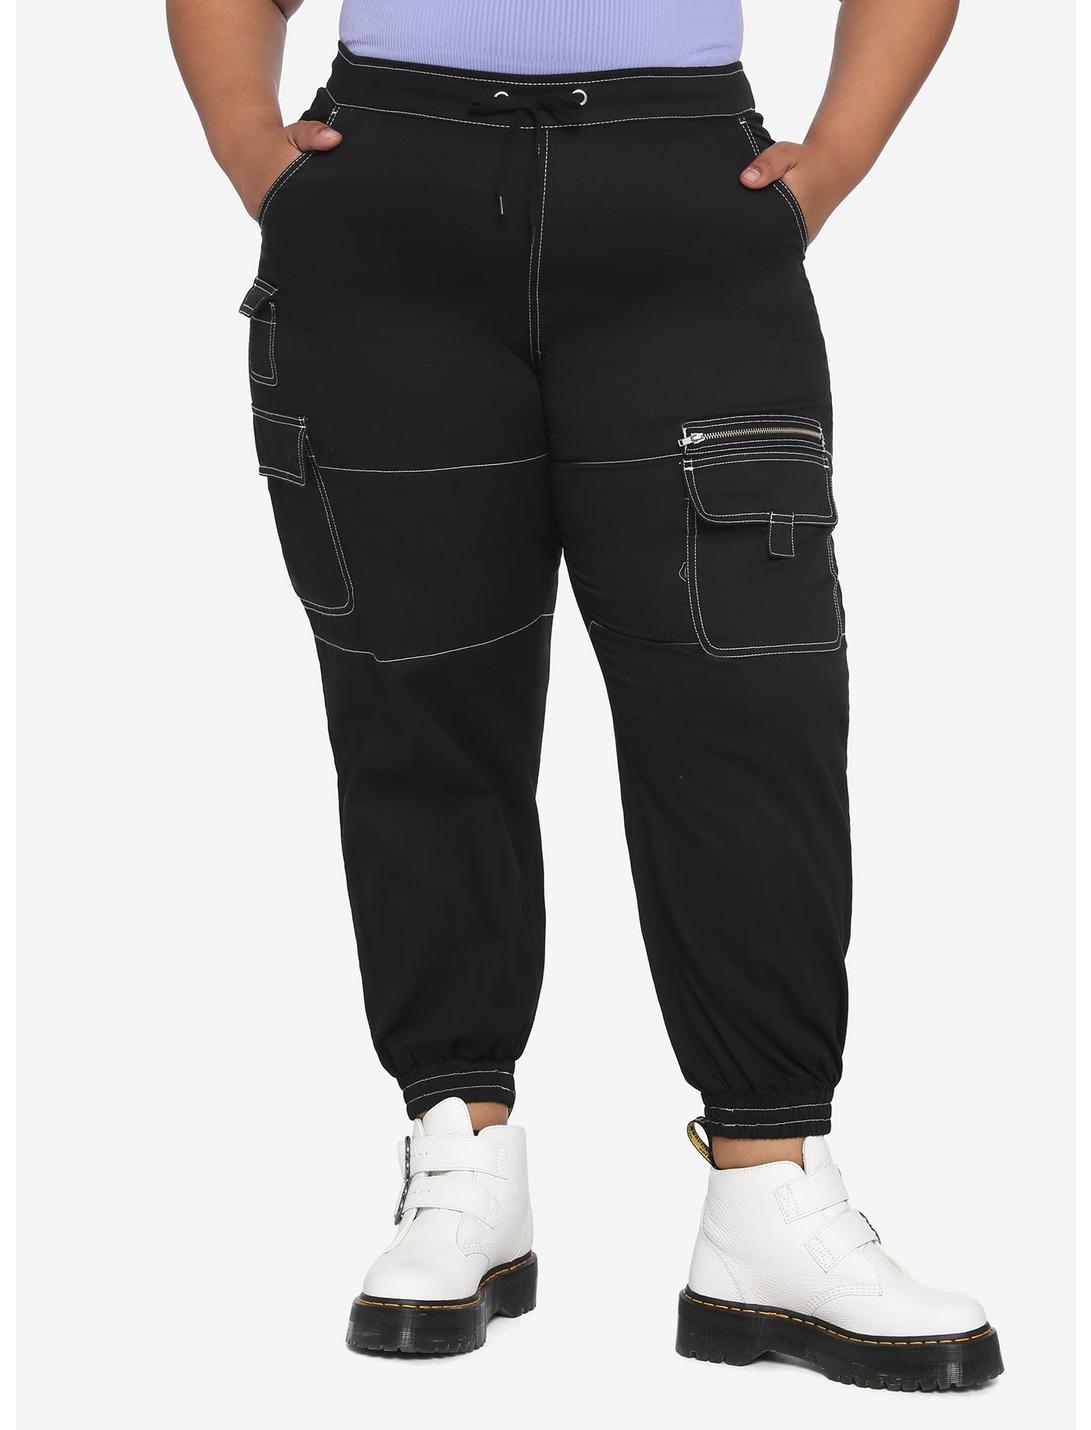 HT Denim Black Contrast Stitch Cargo Jogger Pants Plus Size, BLACK, hi-res